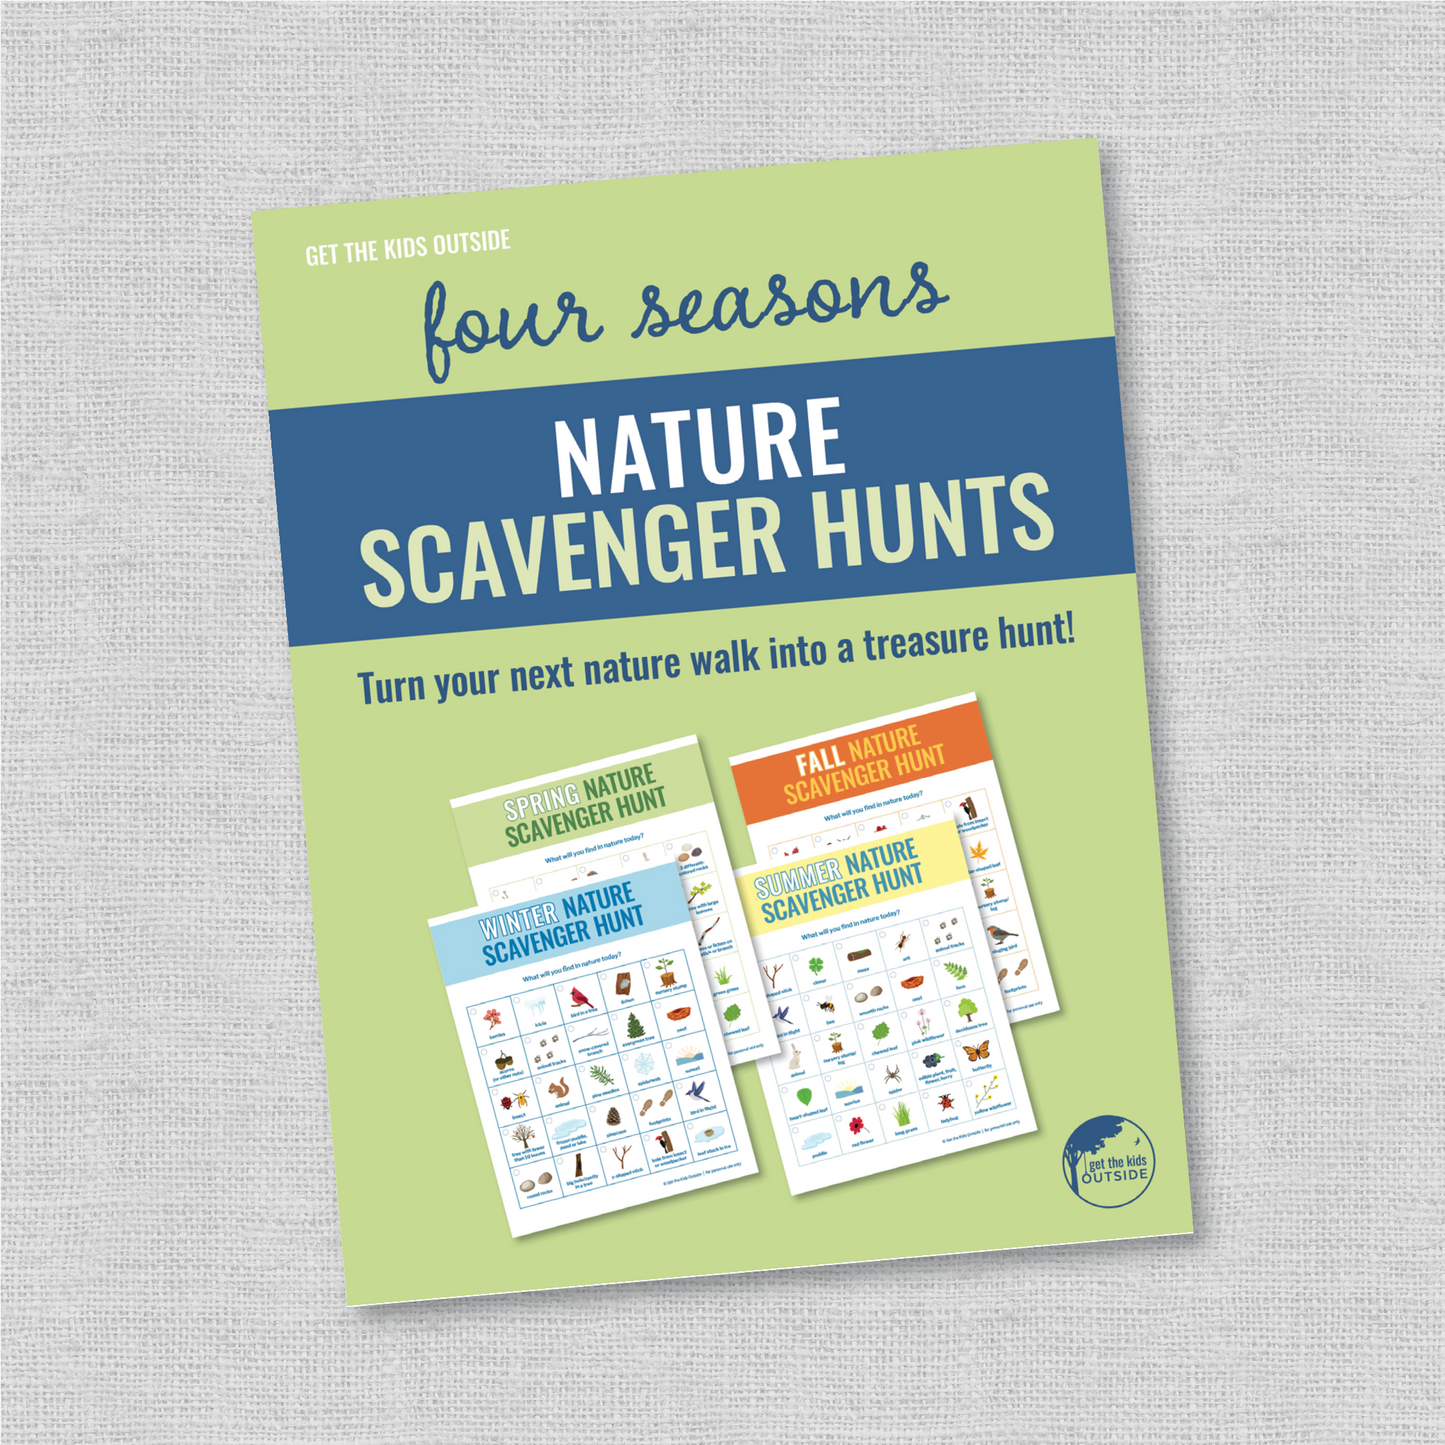 Nature Scavenger Hunts: 4-Season Bundle